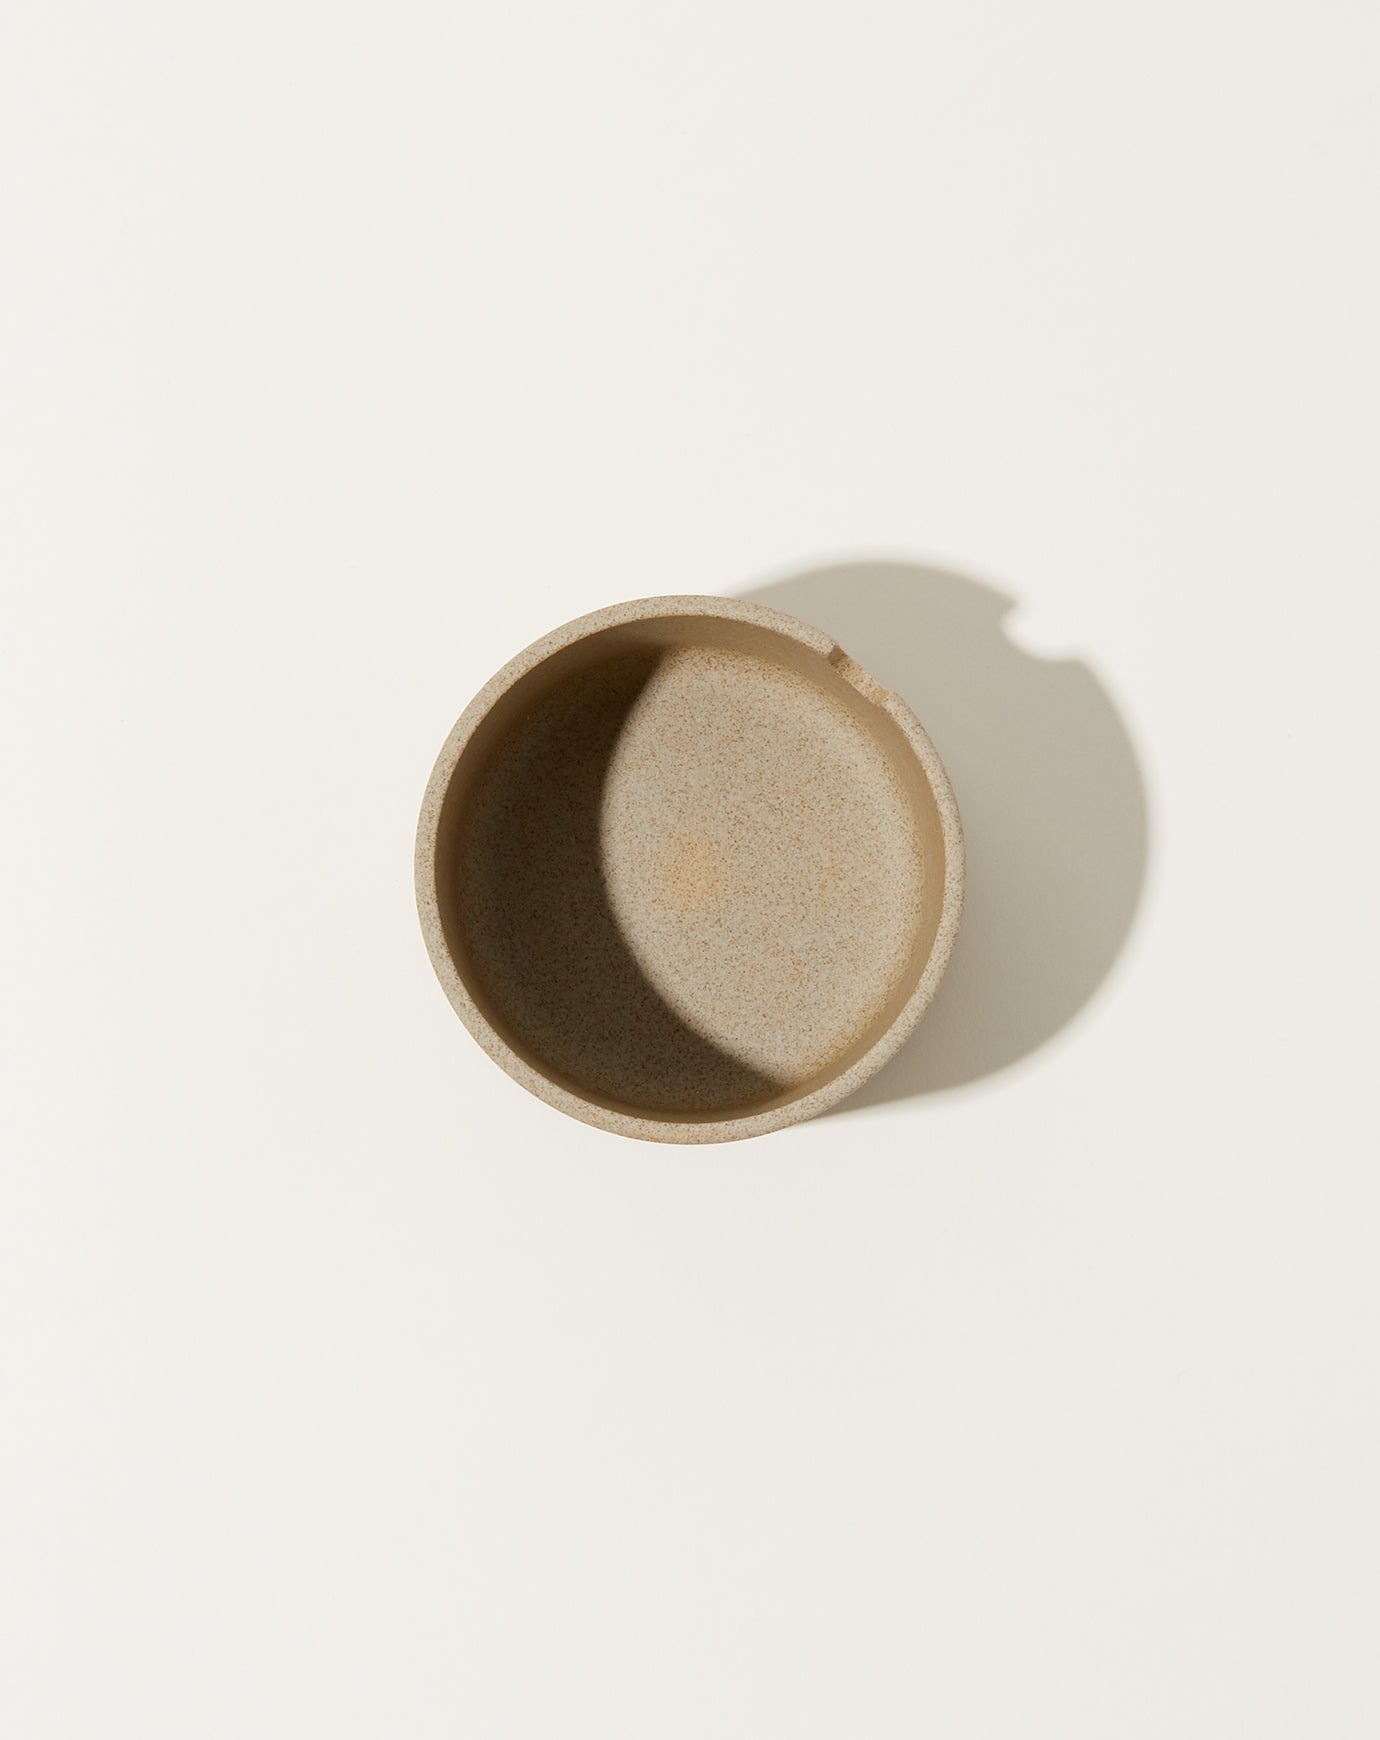 Hasami Porcelain Sugar Pot in Natural